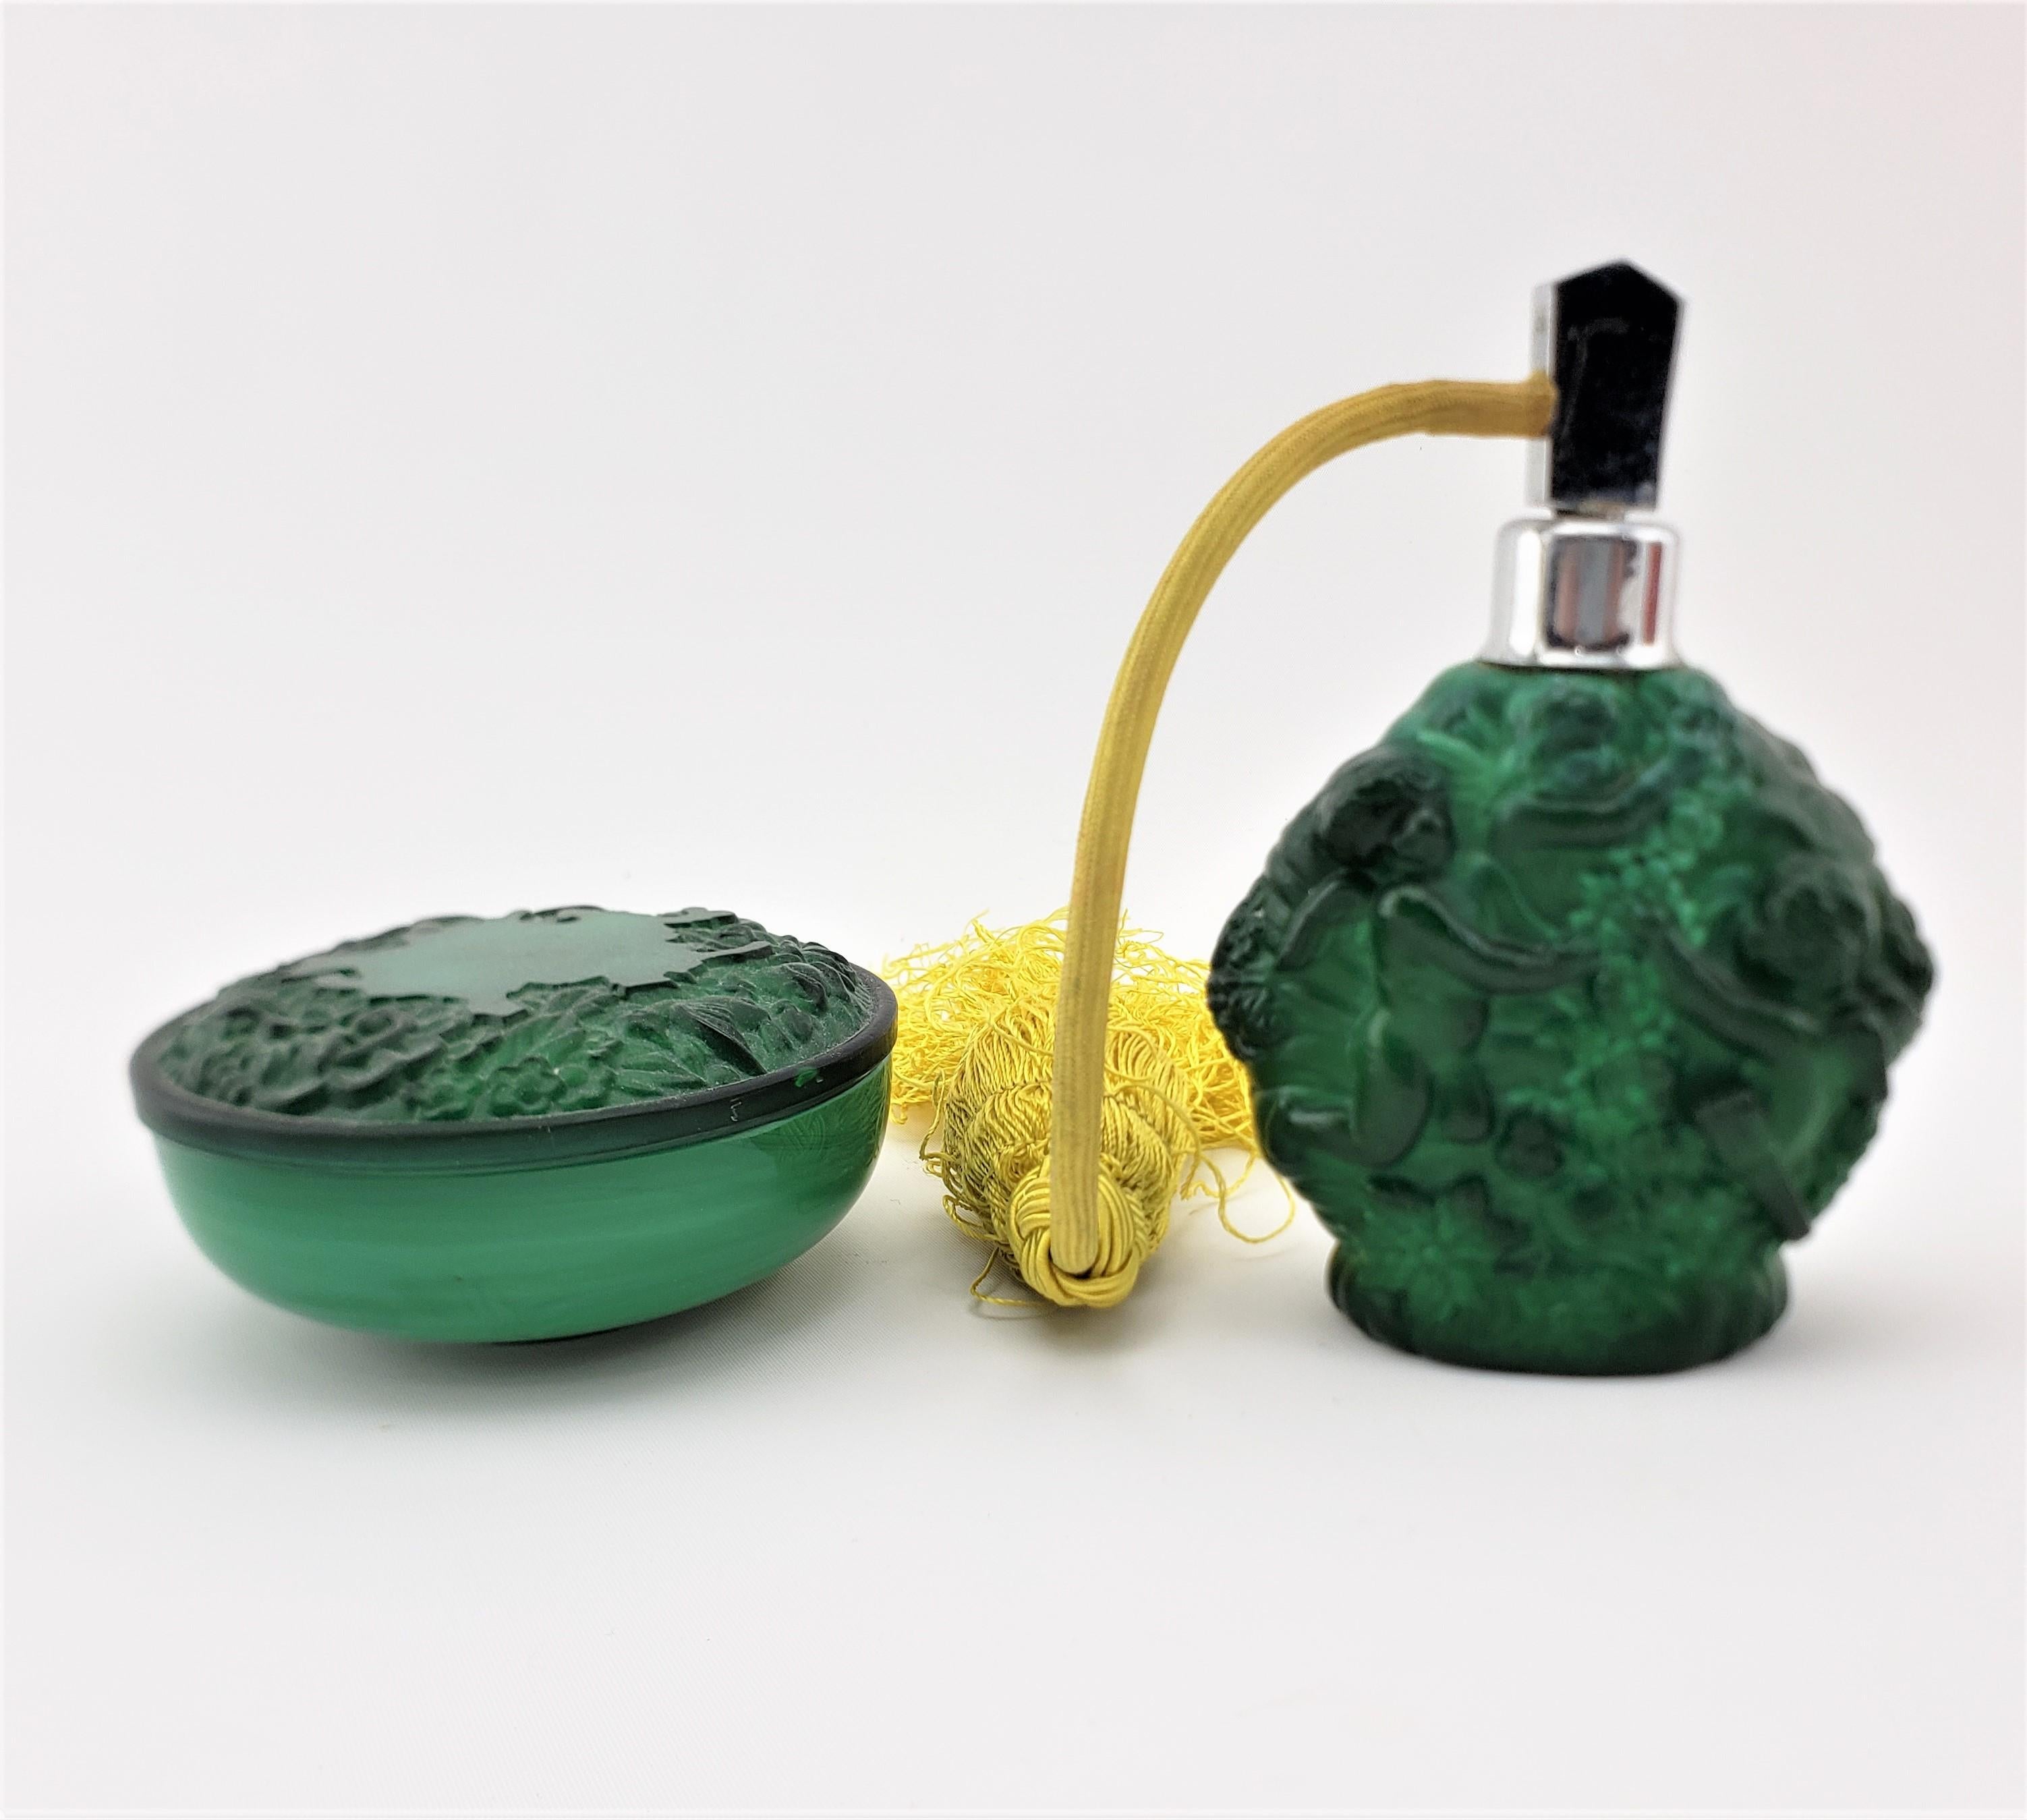 Ce pot de commode antique et ce flacon de parfum ne sont pas signés, mais on suppose qu'ils ont été fabriqués en Autriche vers 1920 dans le style Art déco de l'époque. L'ensemble est réalisé en verre vert profond de couleur malachite et est décoré